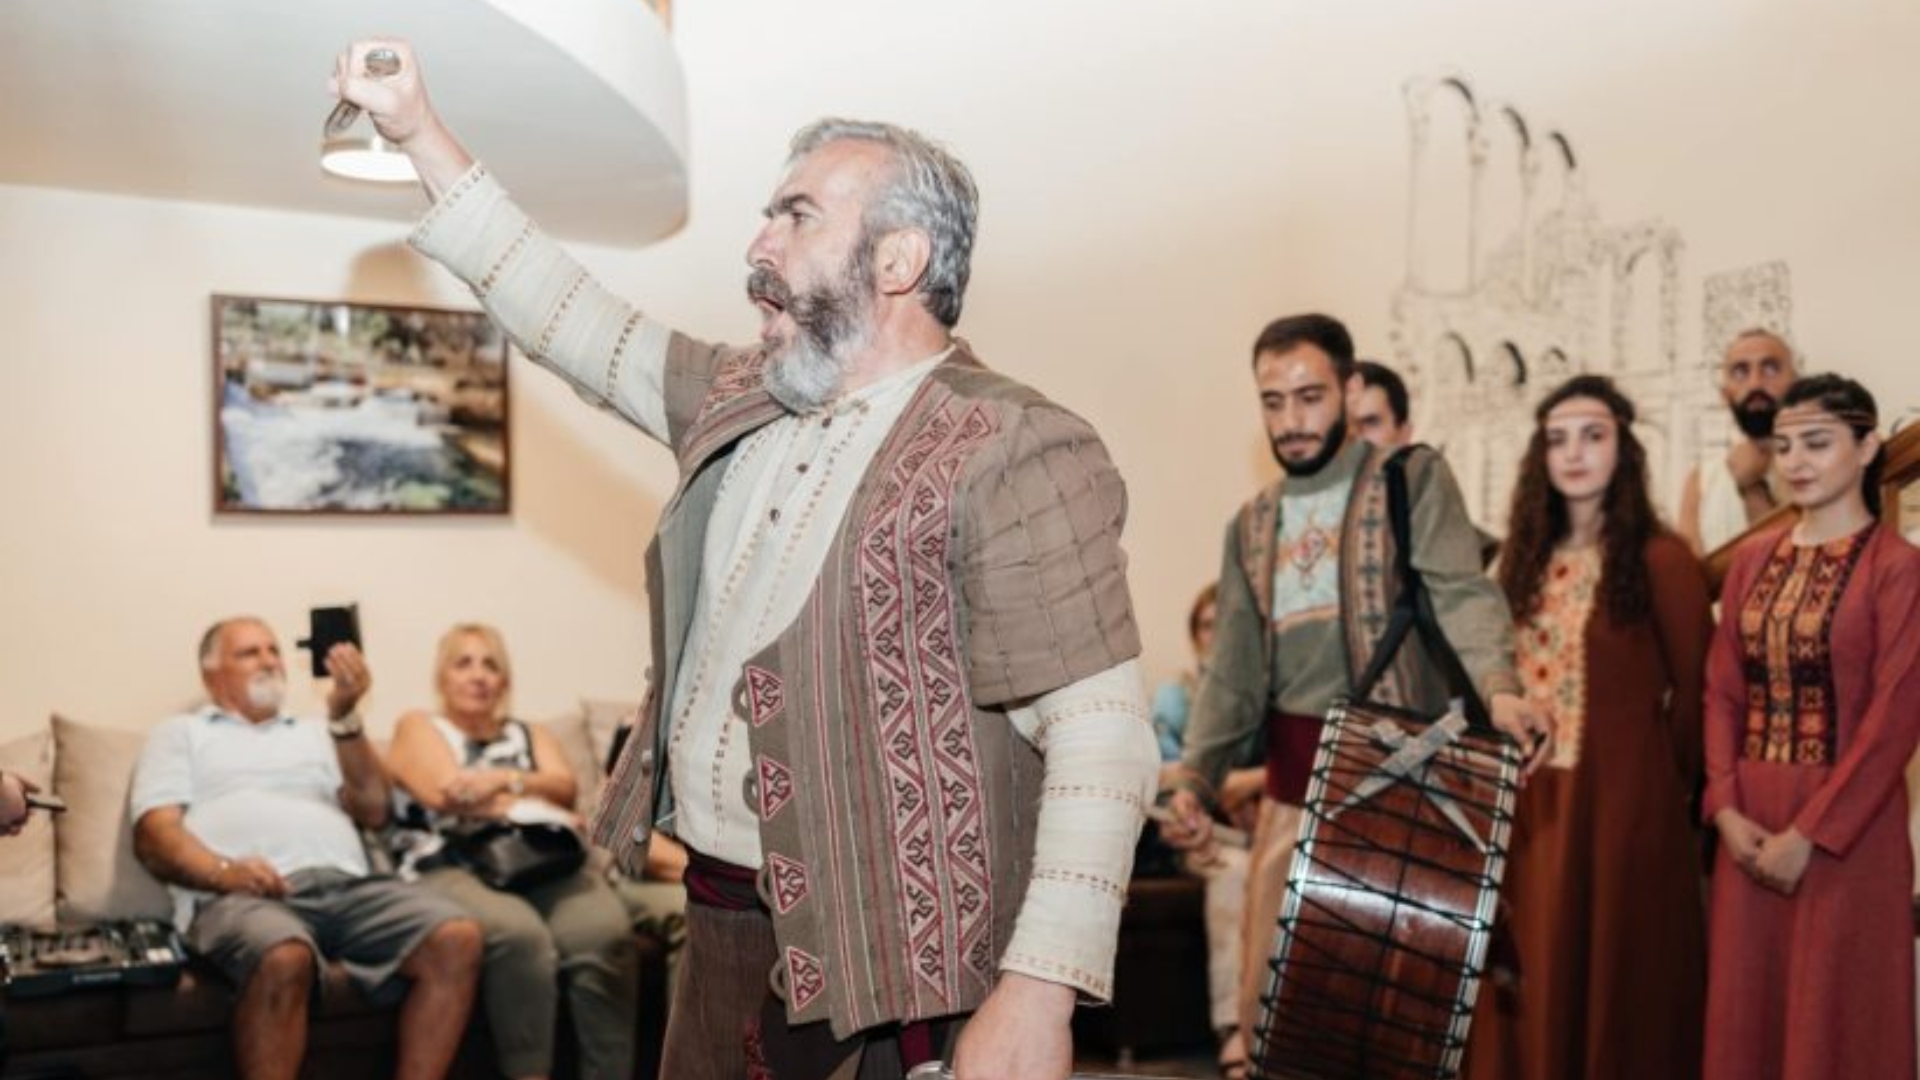 Գագիկ Գինոսյան․ հազարավոր մարդկանց ուսուցիչն ու հայկական պարը բեմից իջեցնողը